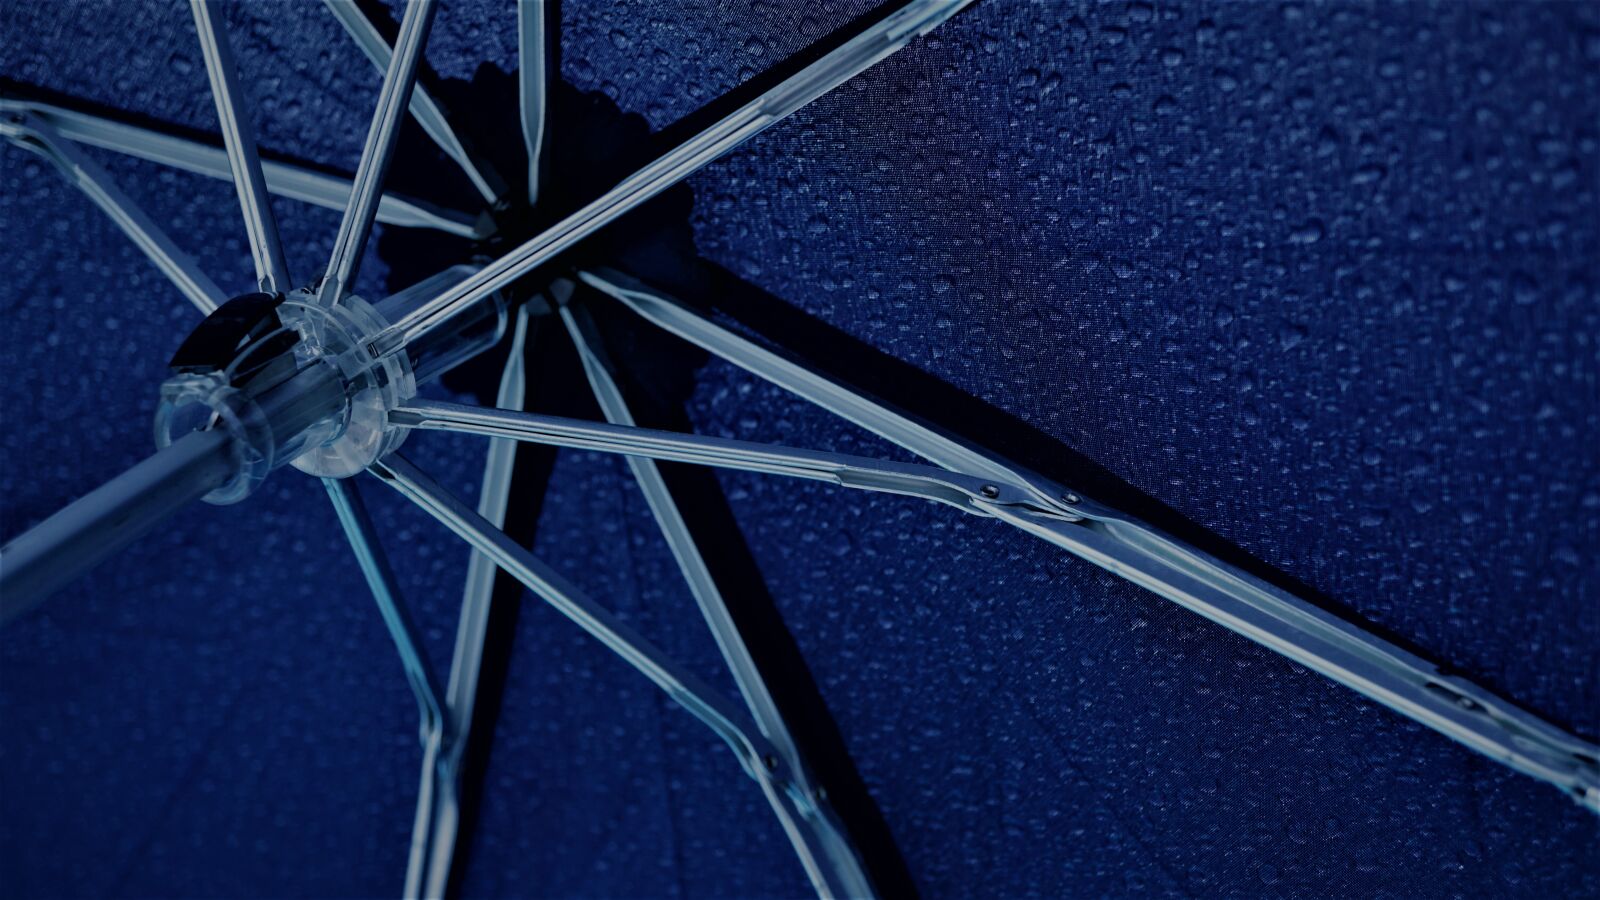 Sony E 30mm F3.5 Macro sample photo. Umbrella, rainy weather, rain photography